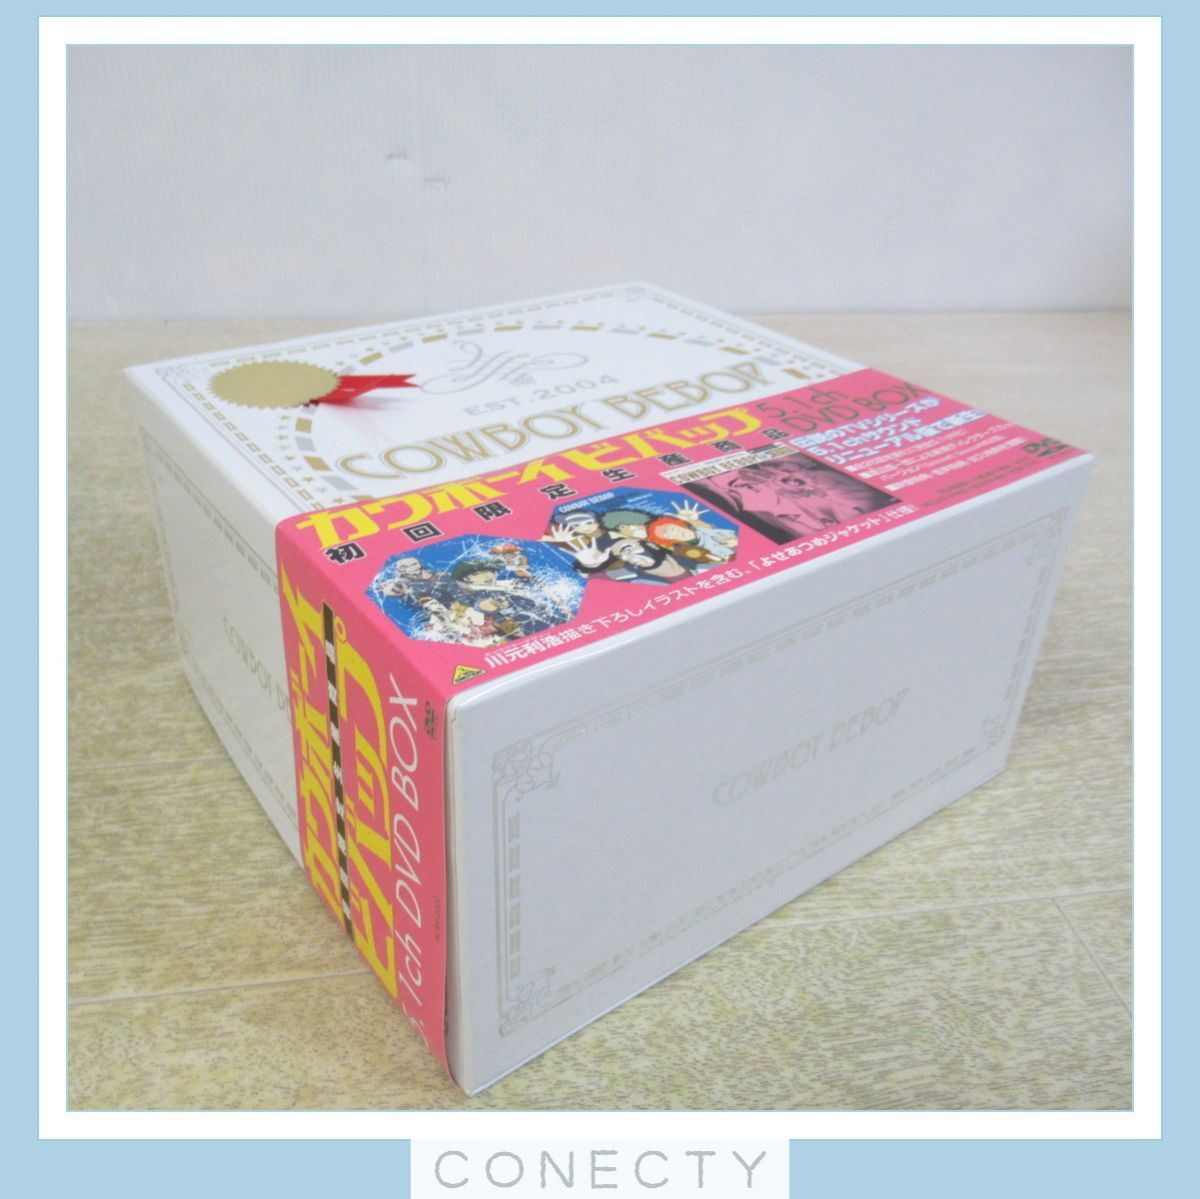 カウボーイビバップ 5.1ch DVD-BOX 初回限定生産商品 COWBOY BEBOP アニメDVD【S3【S2_画像8